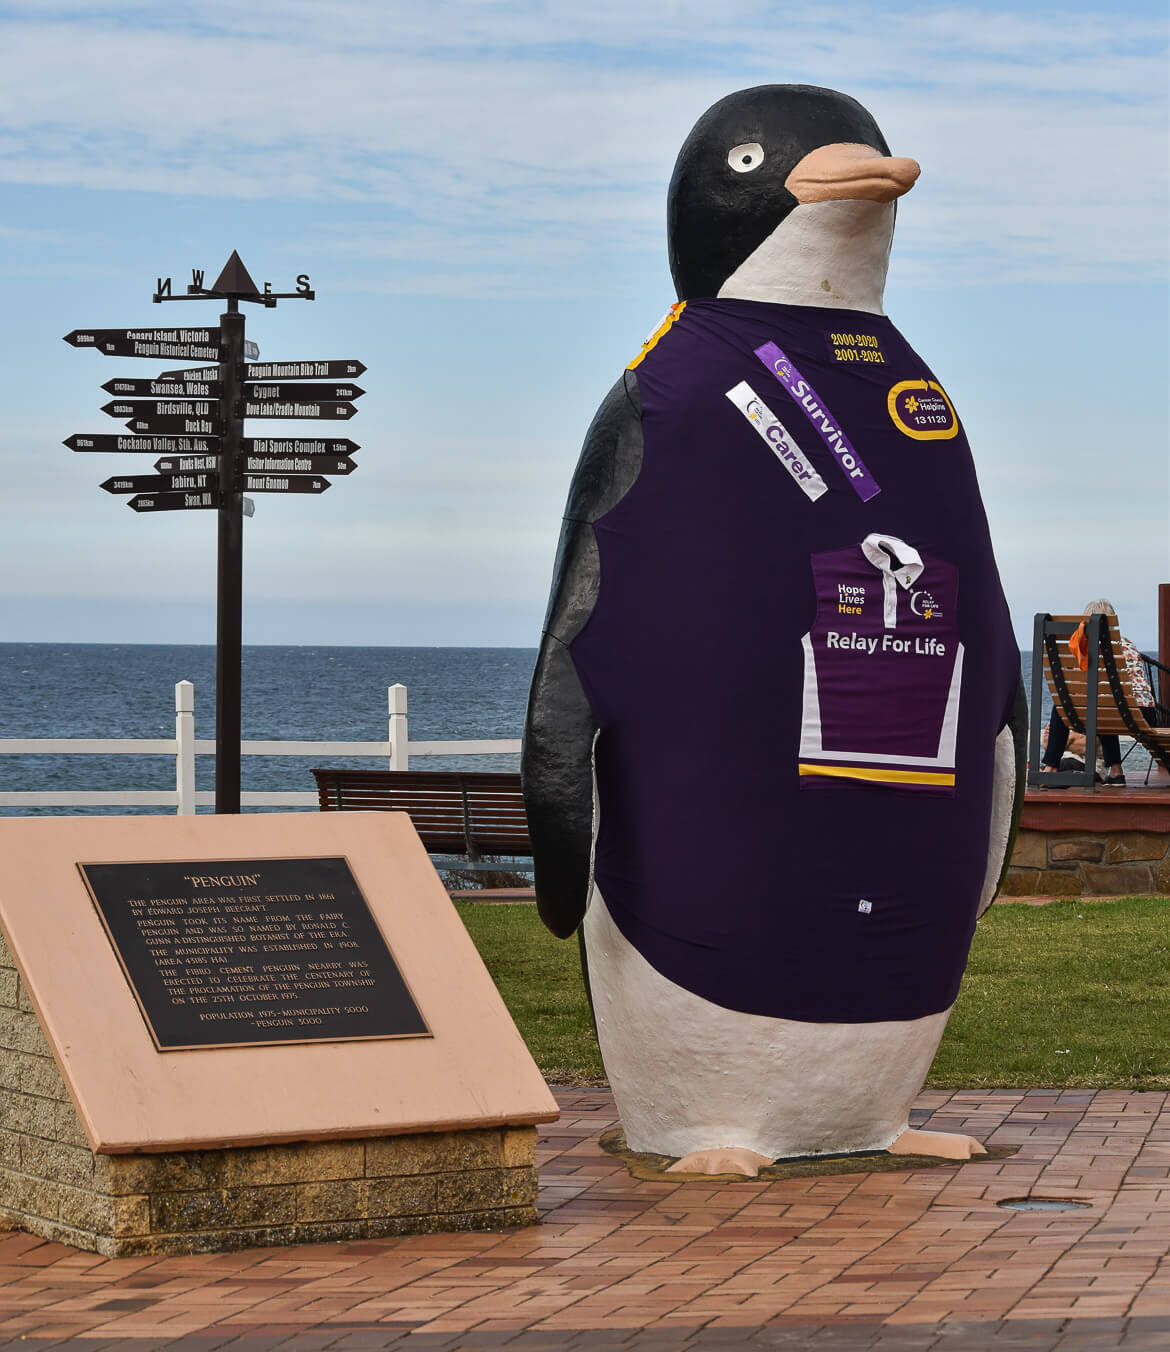 The giant penguin in Penguin